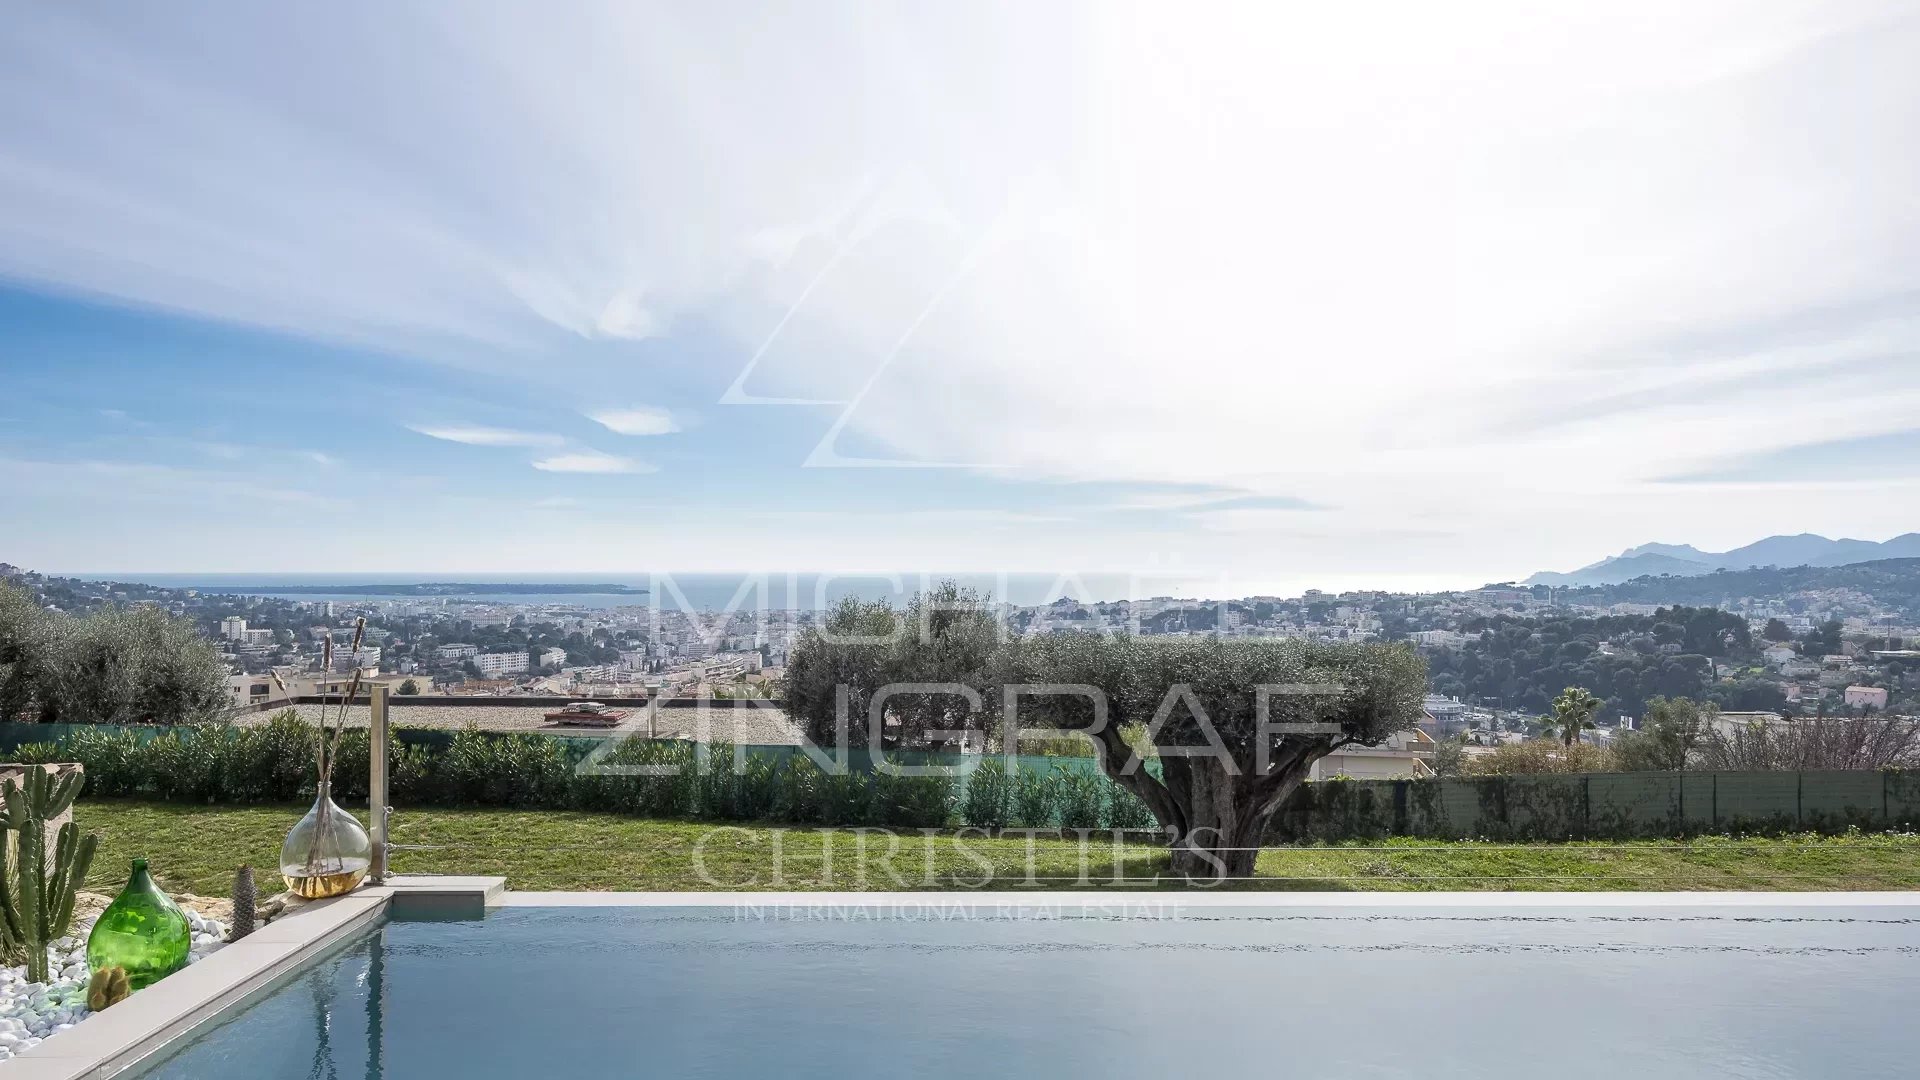 Le Cannet collines - Moderne provenzalische Villa in perfektem Zustand - 180 ° Panorama-Meerblick